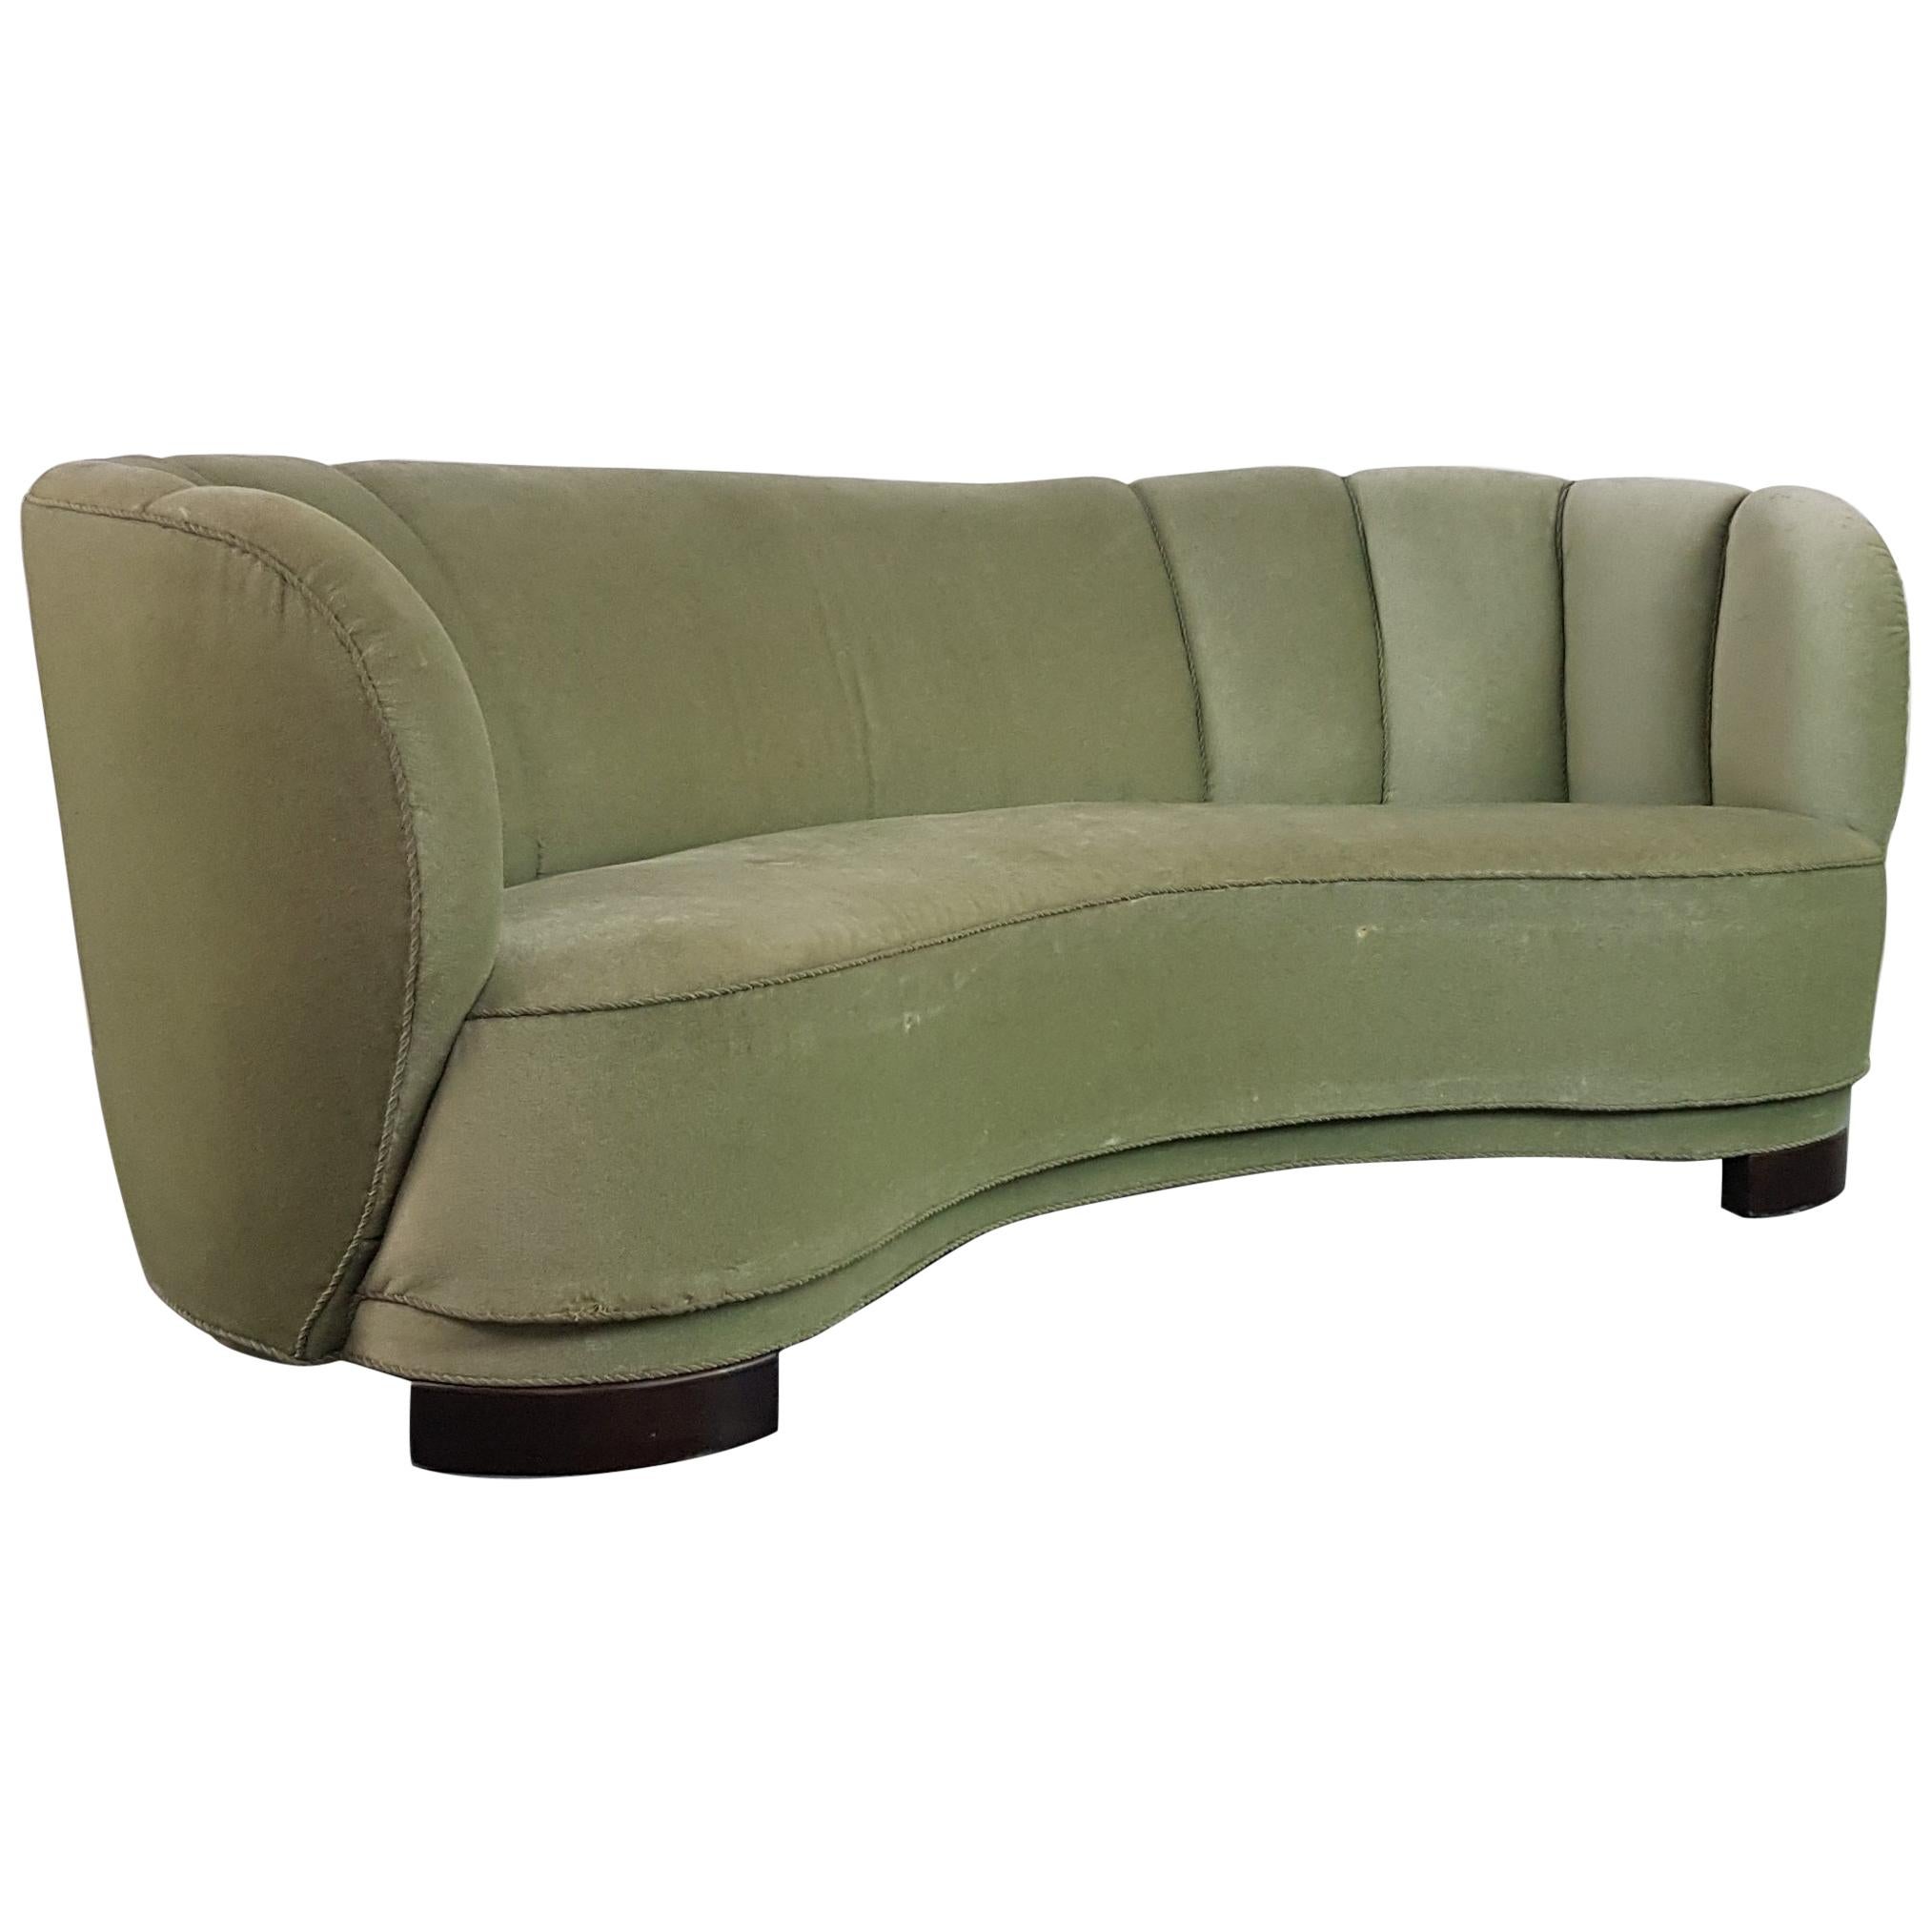 Vintage 1930s-1940s Danish Banana Sofa with Original Green Velvet Upholstery For Sale